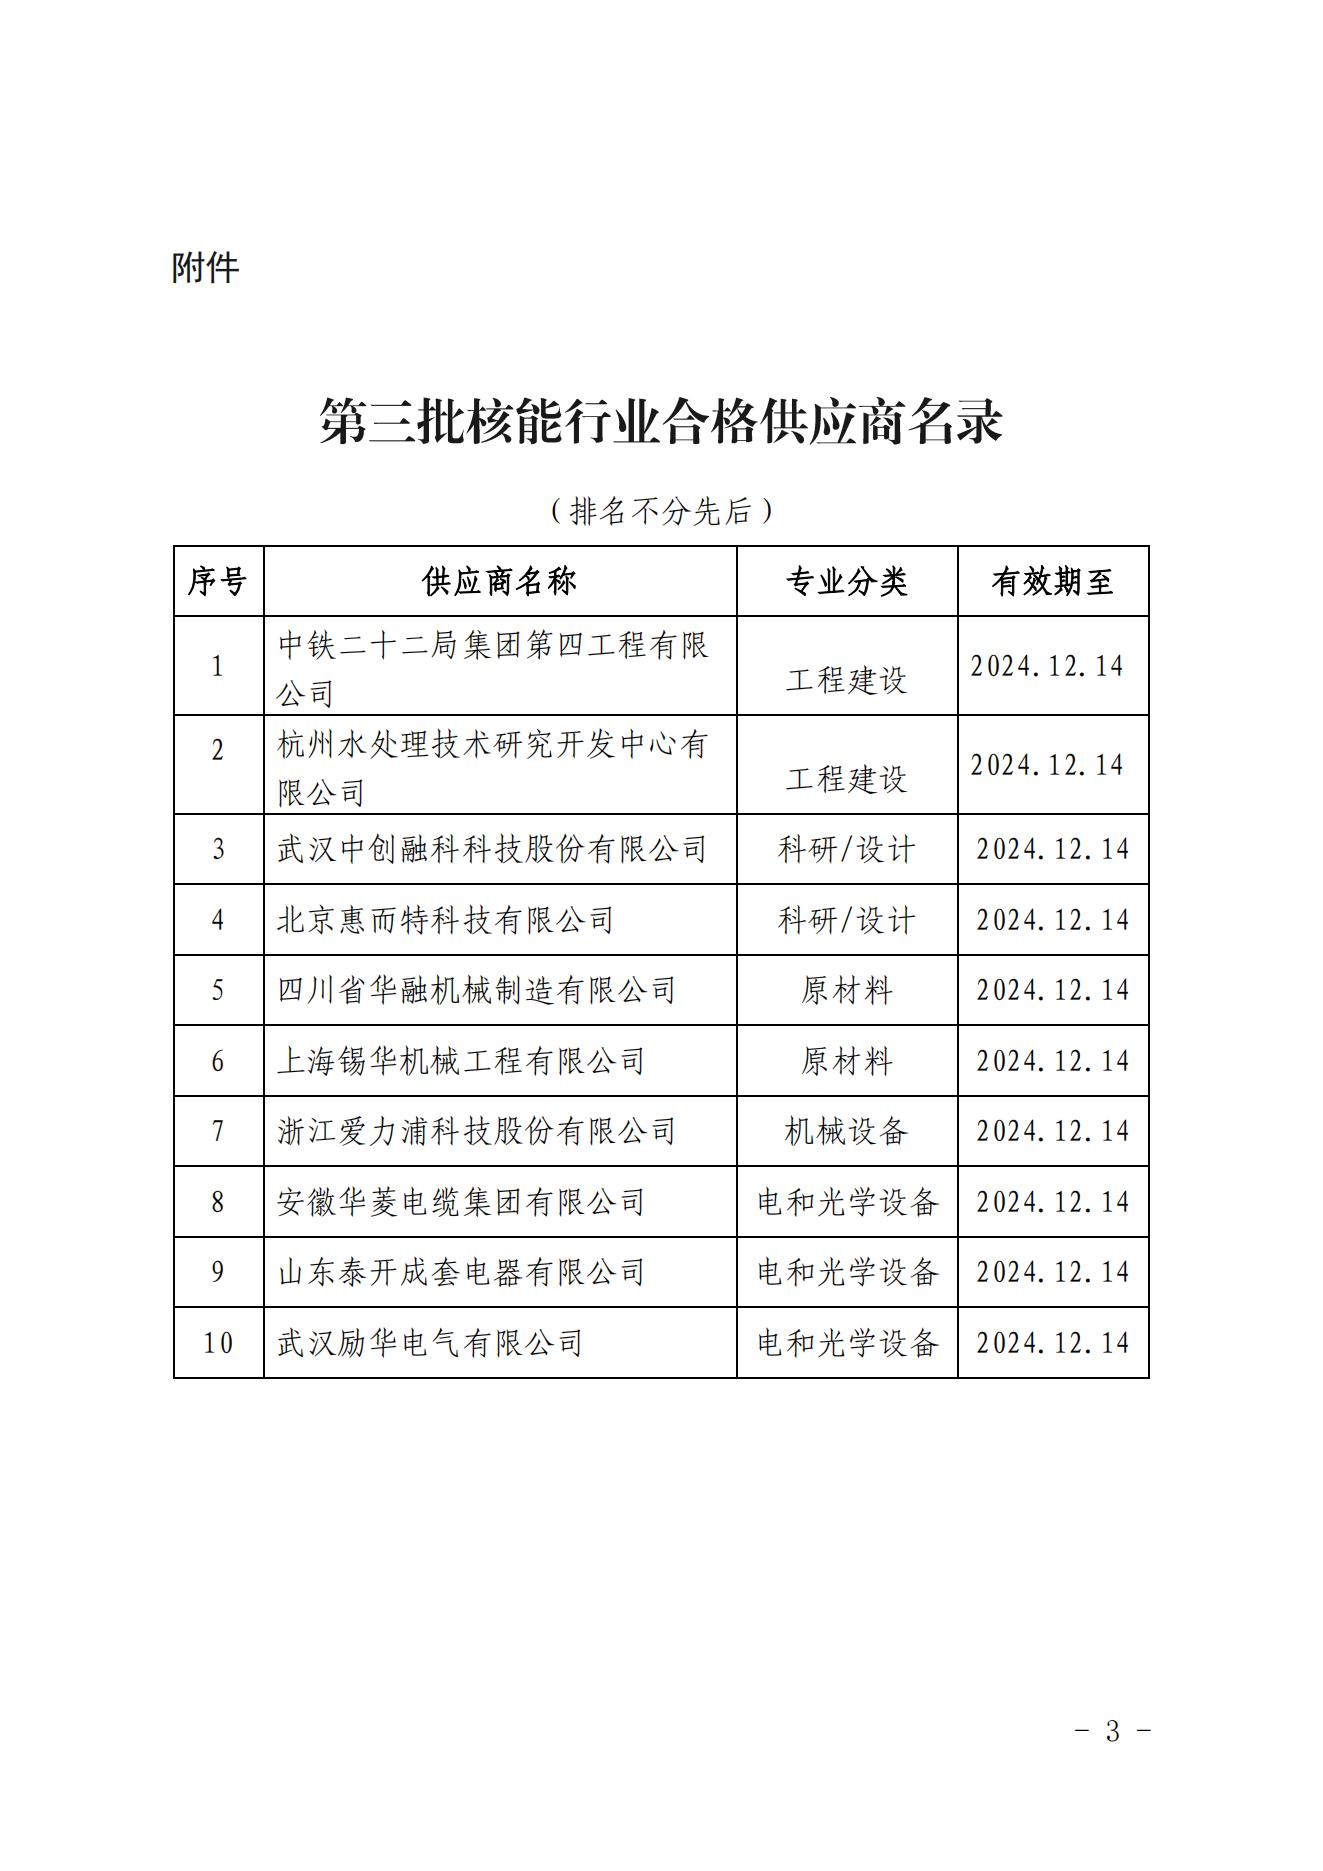 关于发布中国核能行业协会核能行业第三批合格供应商名录的公告_02.jpg